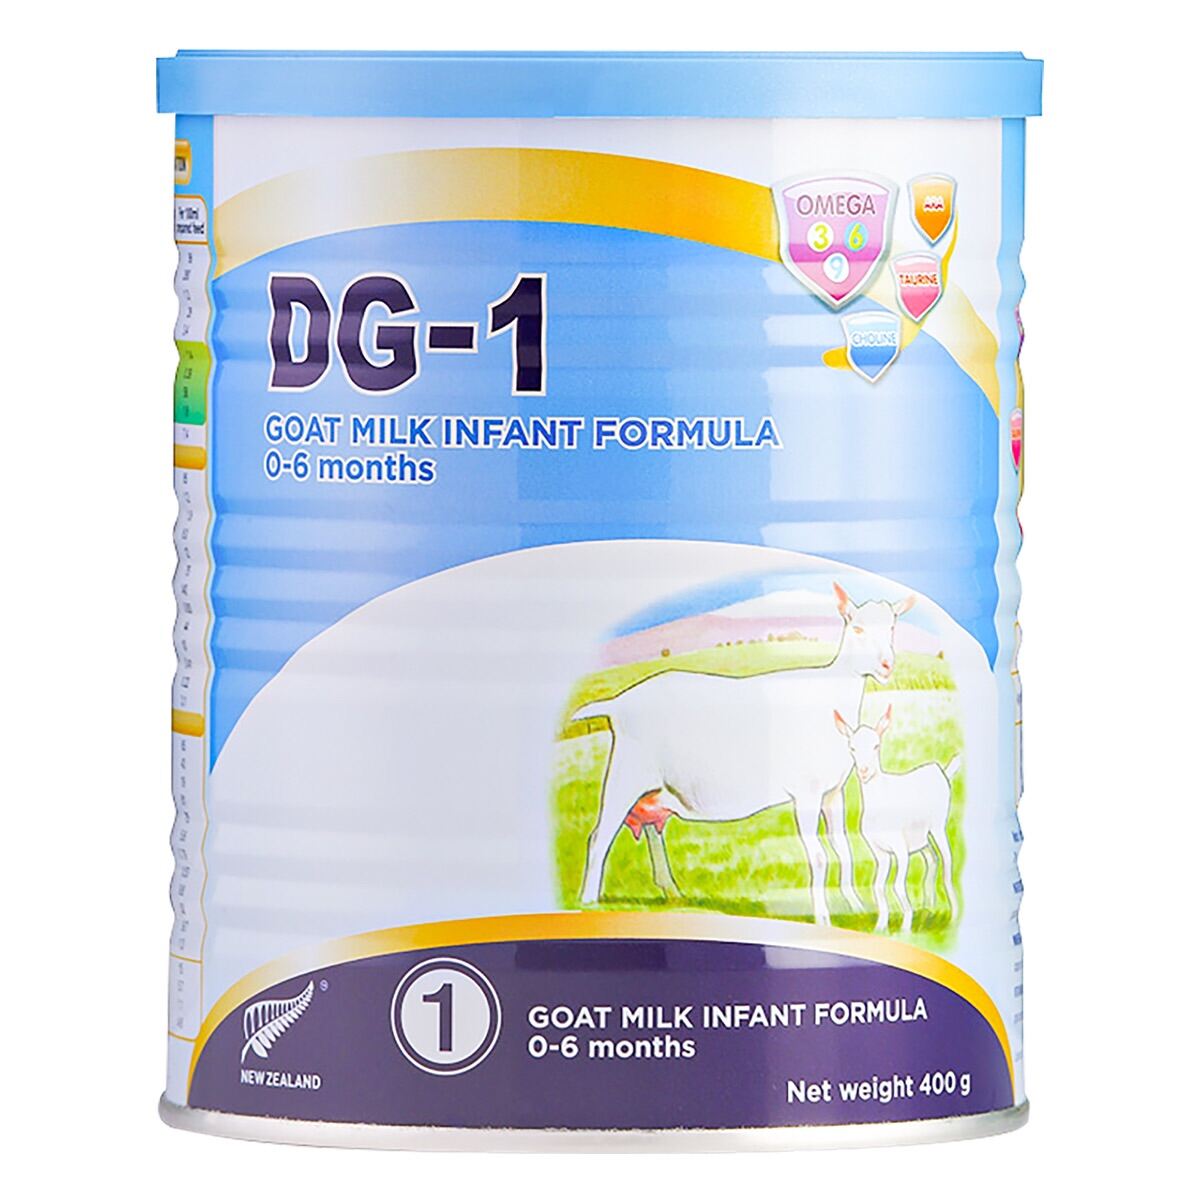 Combo 4 hộp sữa dê DG-1 dành cho trẻ từ 0-6 tháng